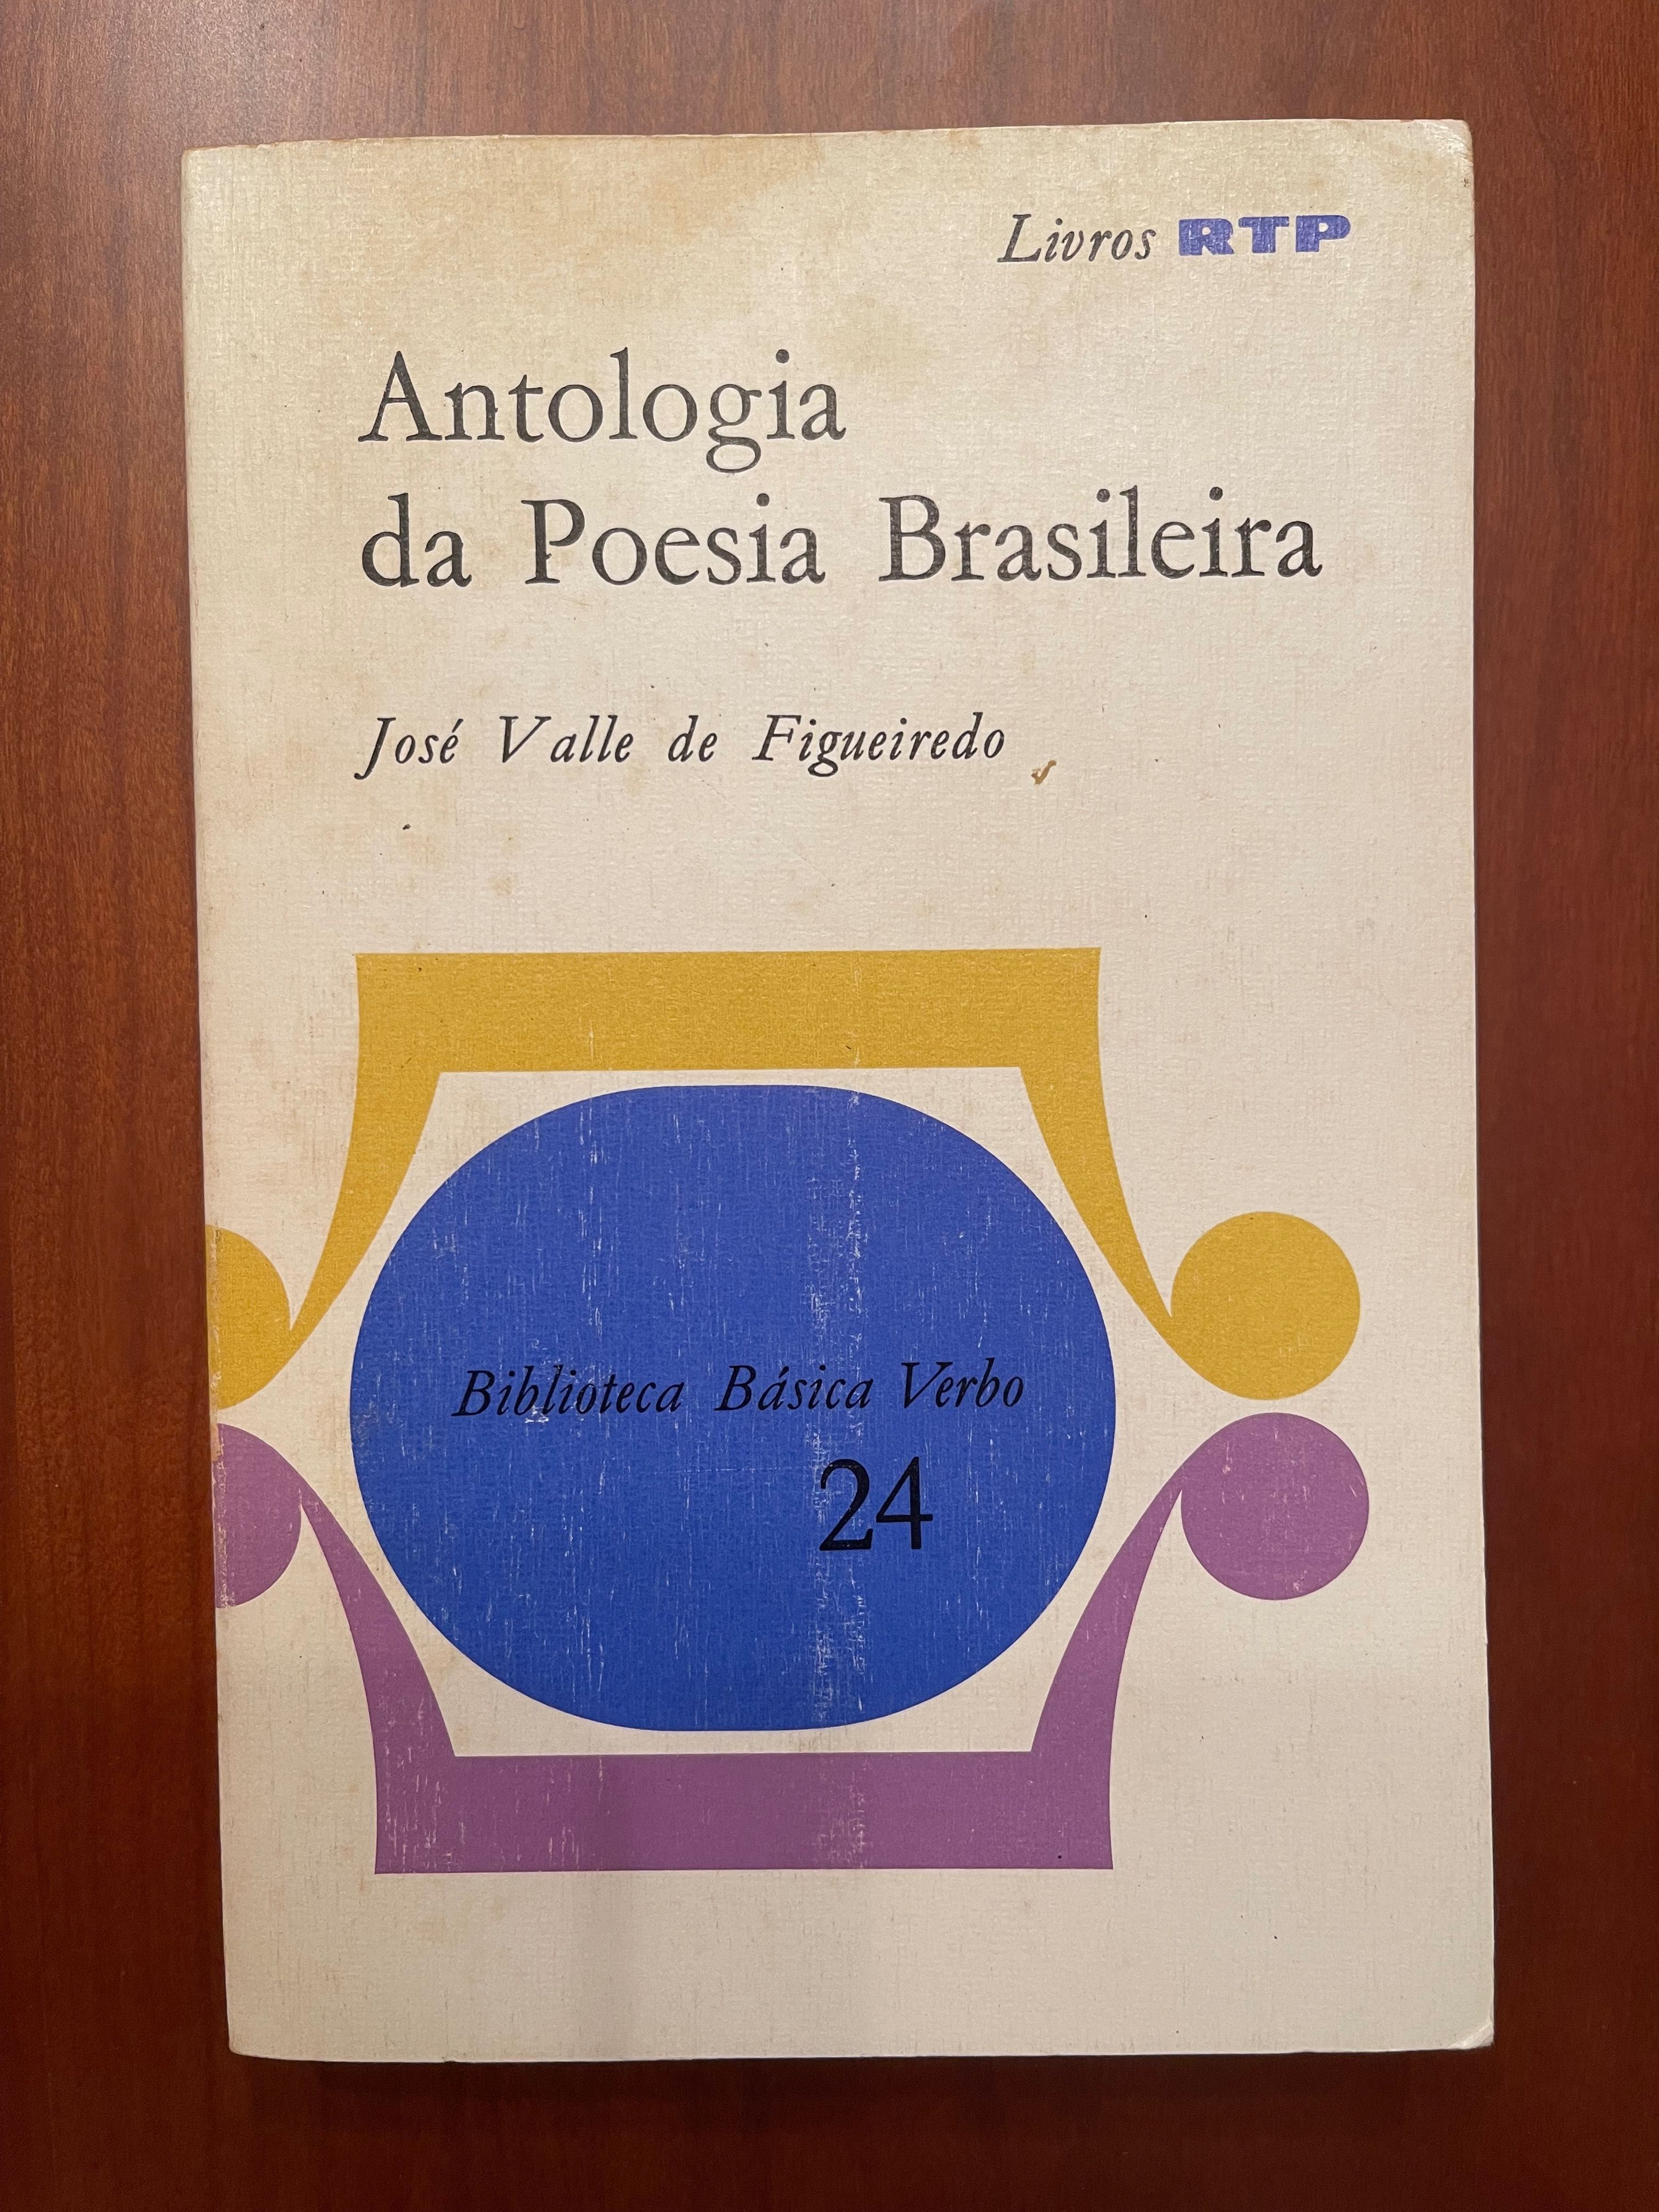 "Antologia da Poesia Brasileira", de José Valle de Figueiredo